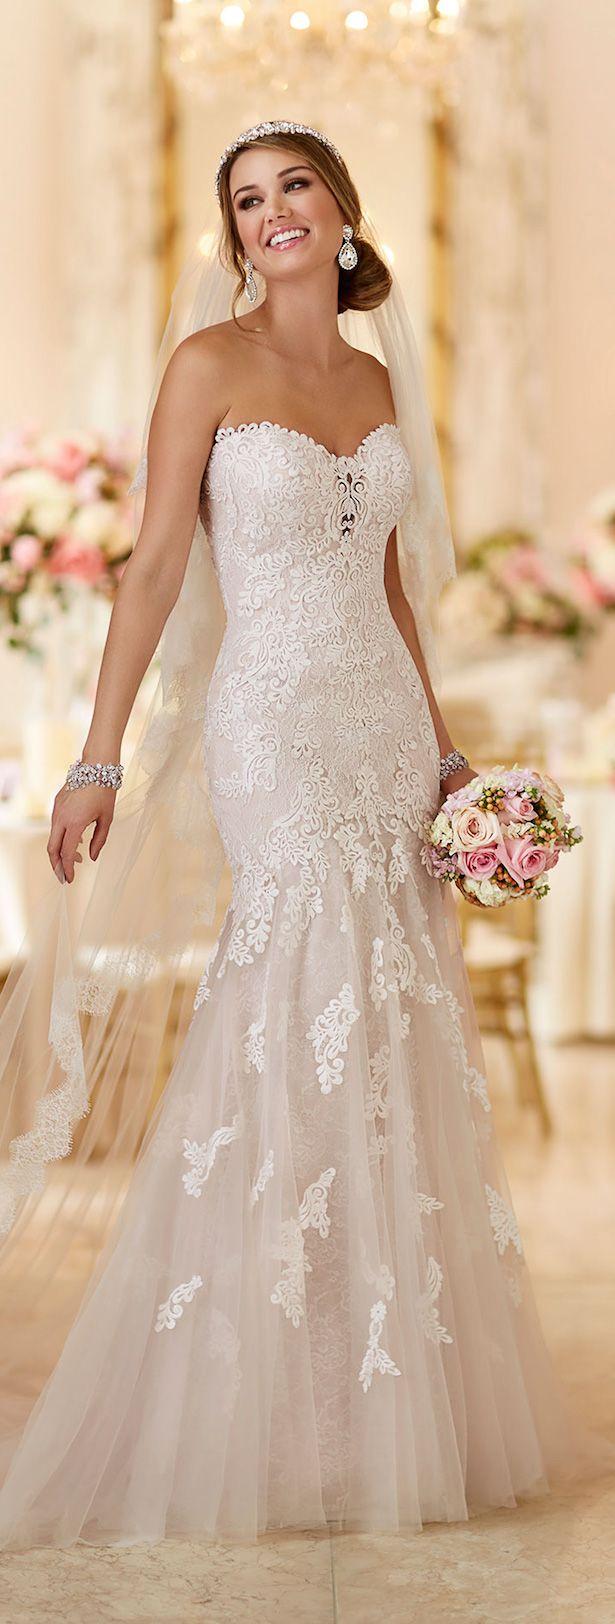 Wedding - Sexy Sweetheart Wedding Dress By Stella York